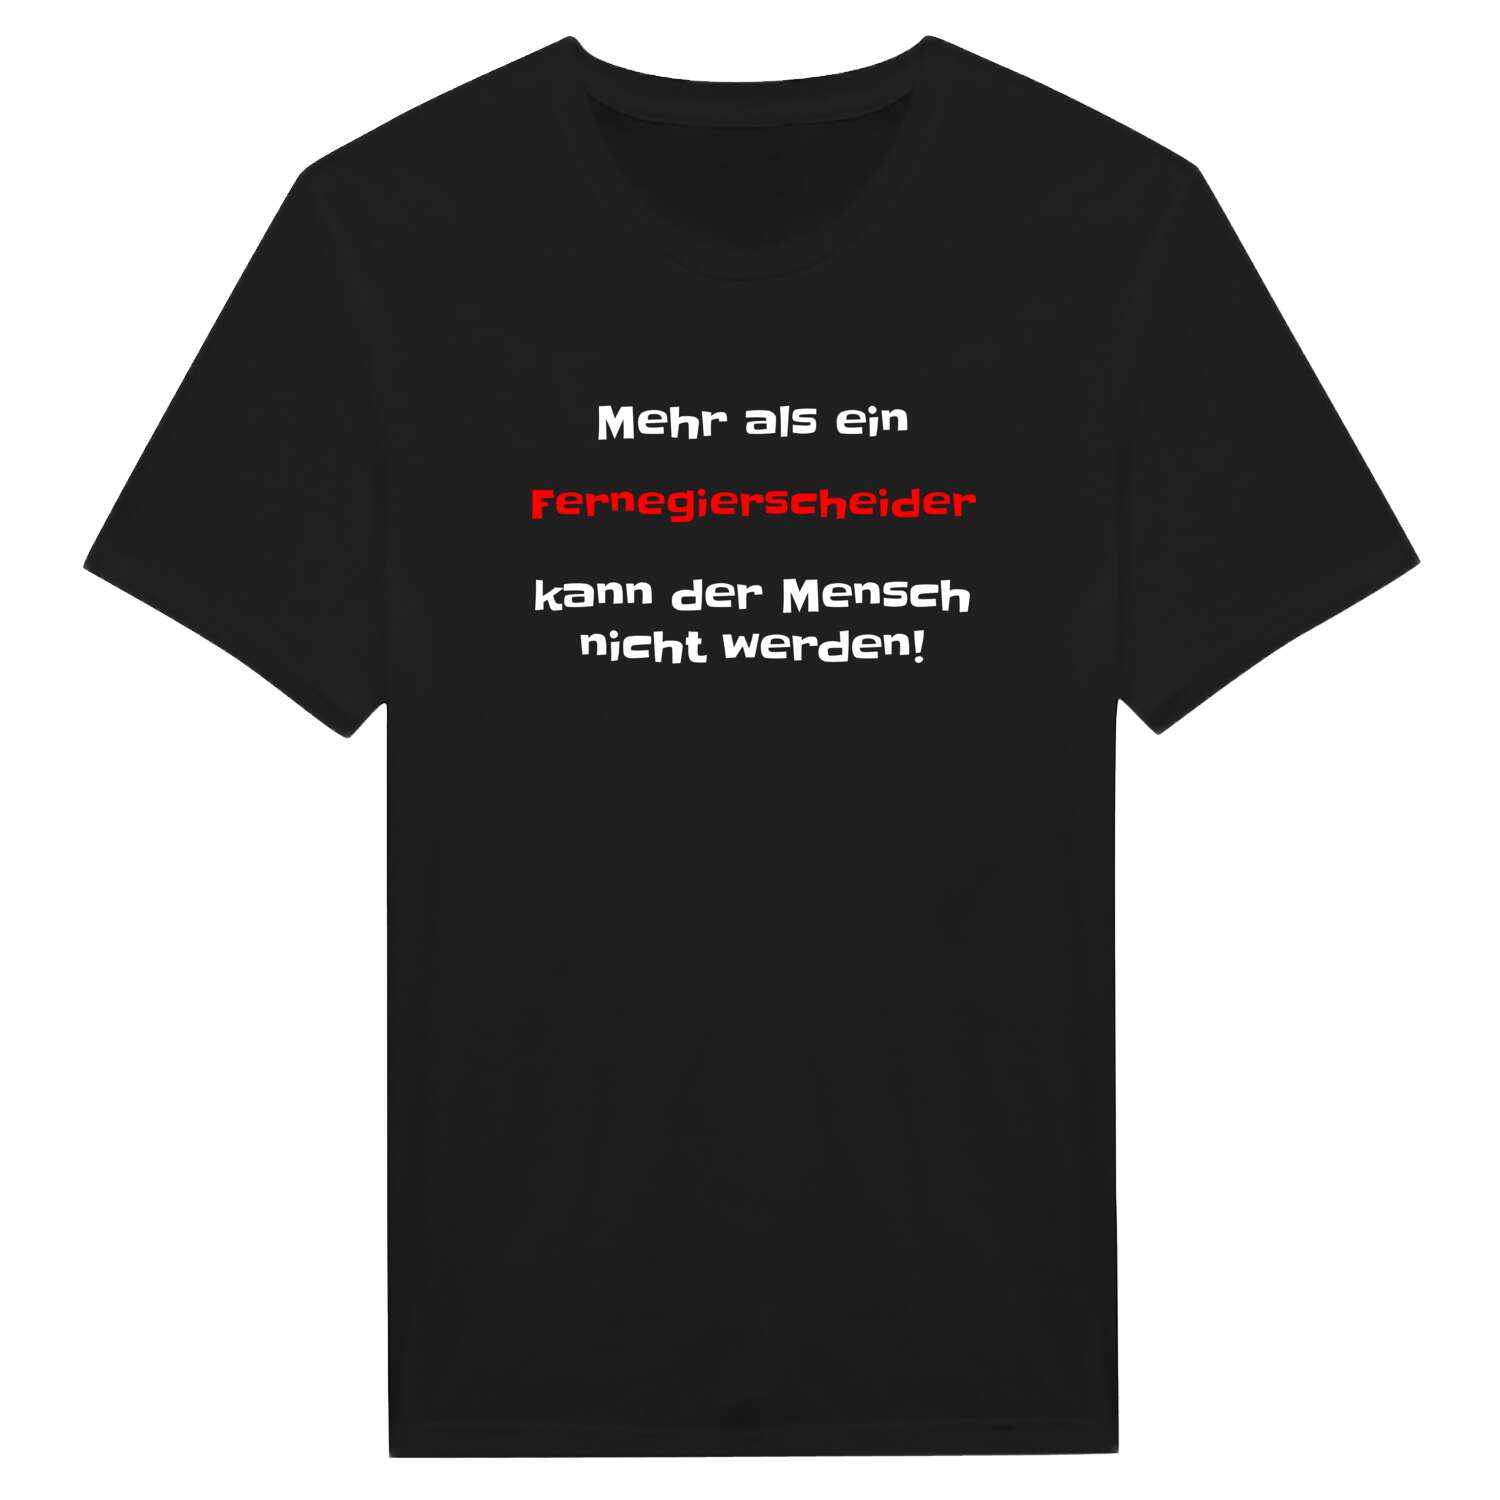 Fernegierscheid T-Shirt »Mehr als ein«